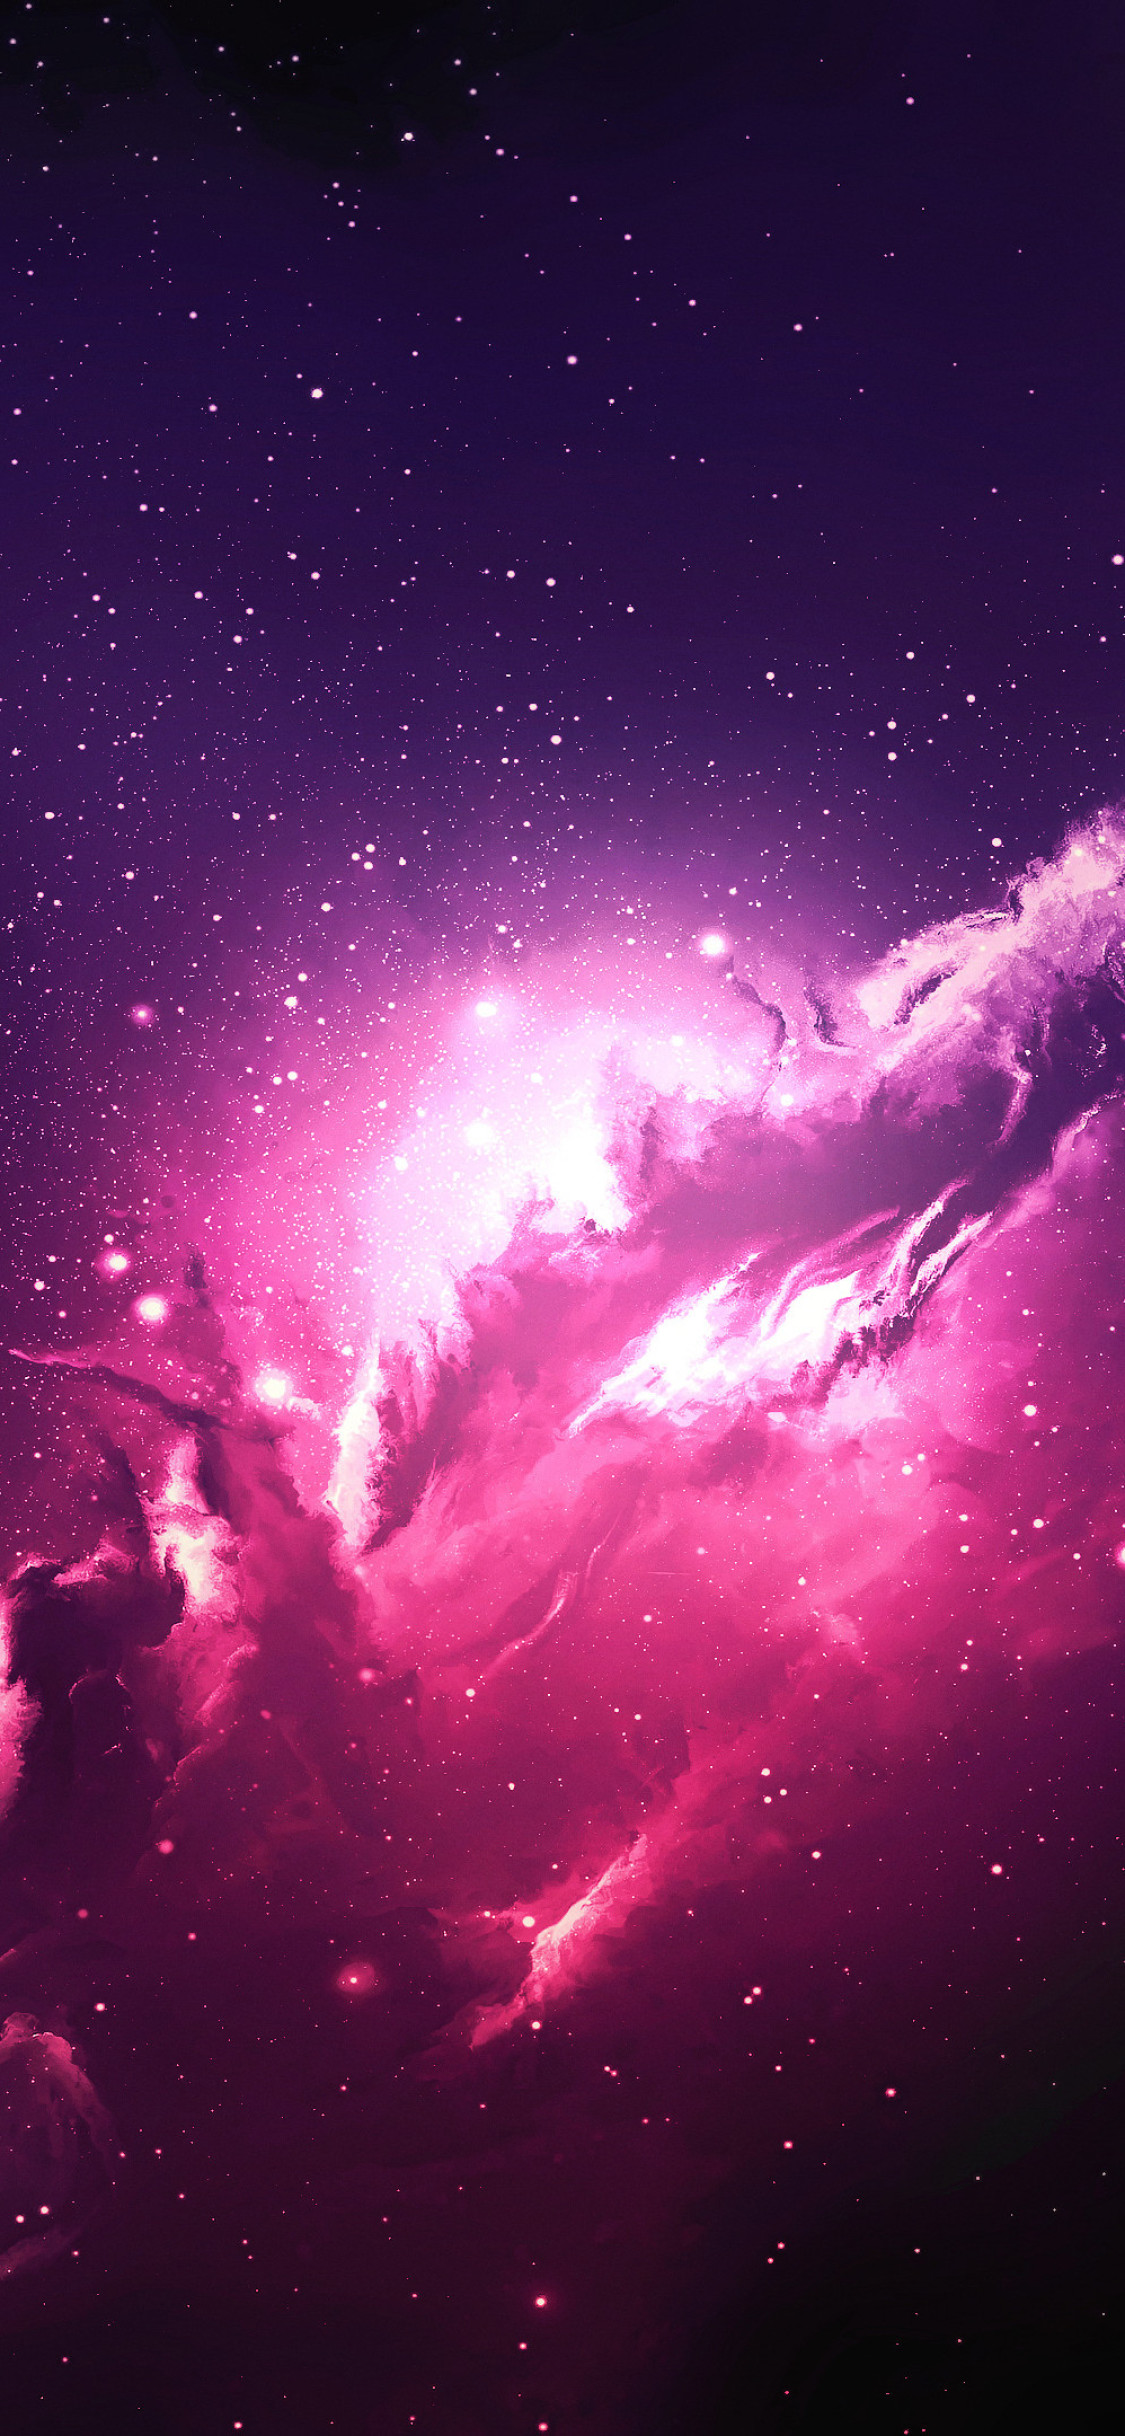 宇宙の壁紙,空,ピンク,星雲,雰囲気,宇宙